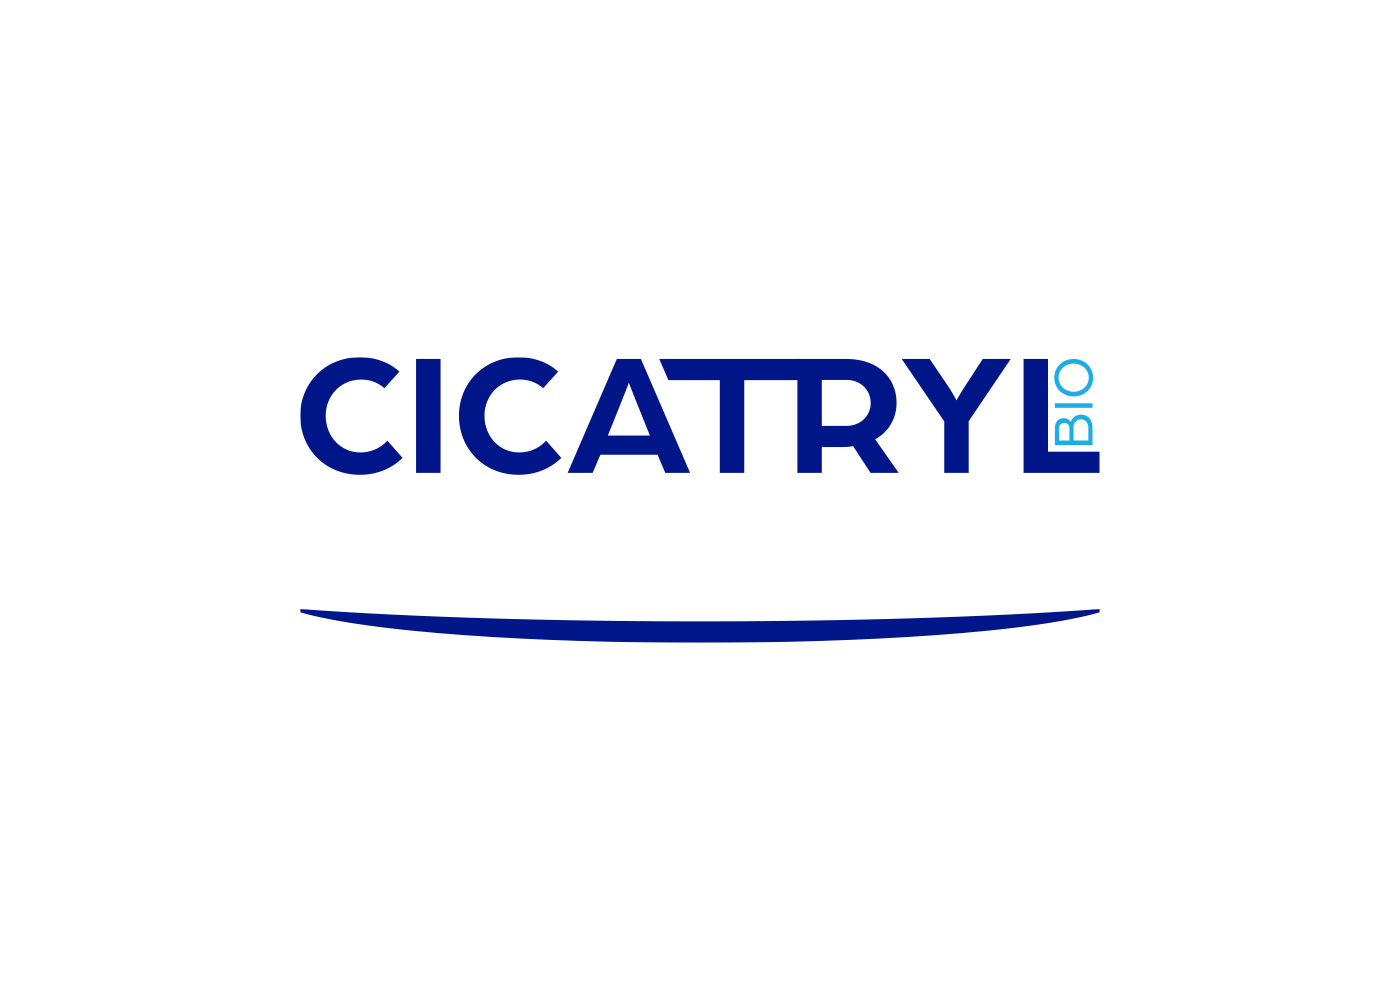 Cicatryl Bio - Création de l'identité de marque et du logo